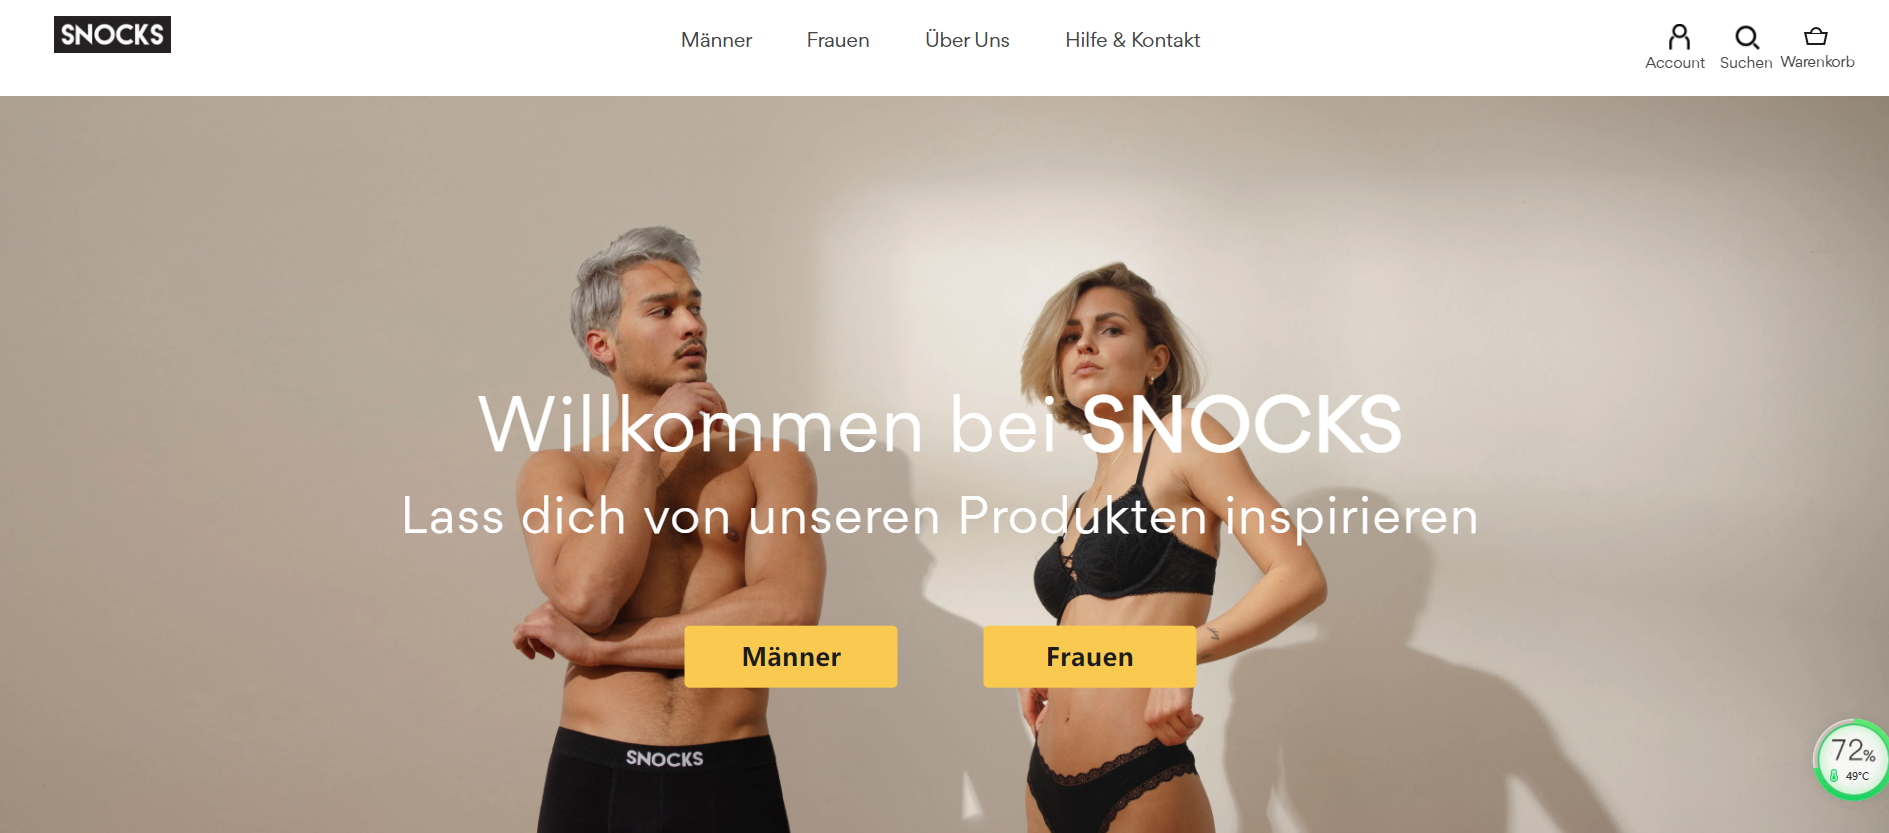 凯辉基金收购德国互联网基础服装品牌 SNOCKS少数股权